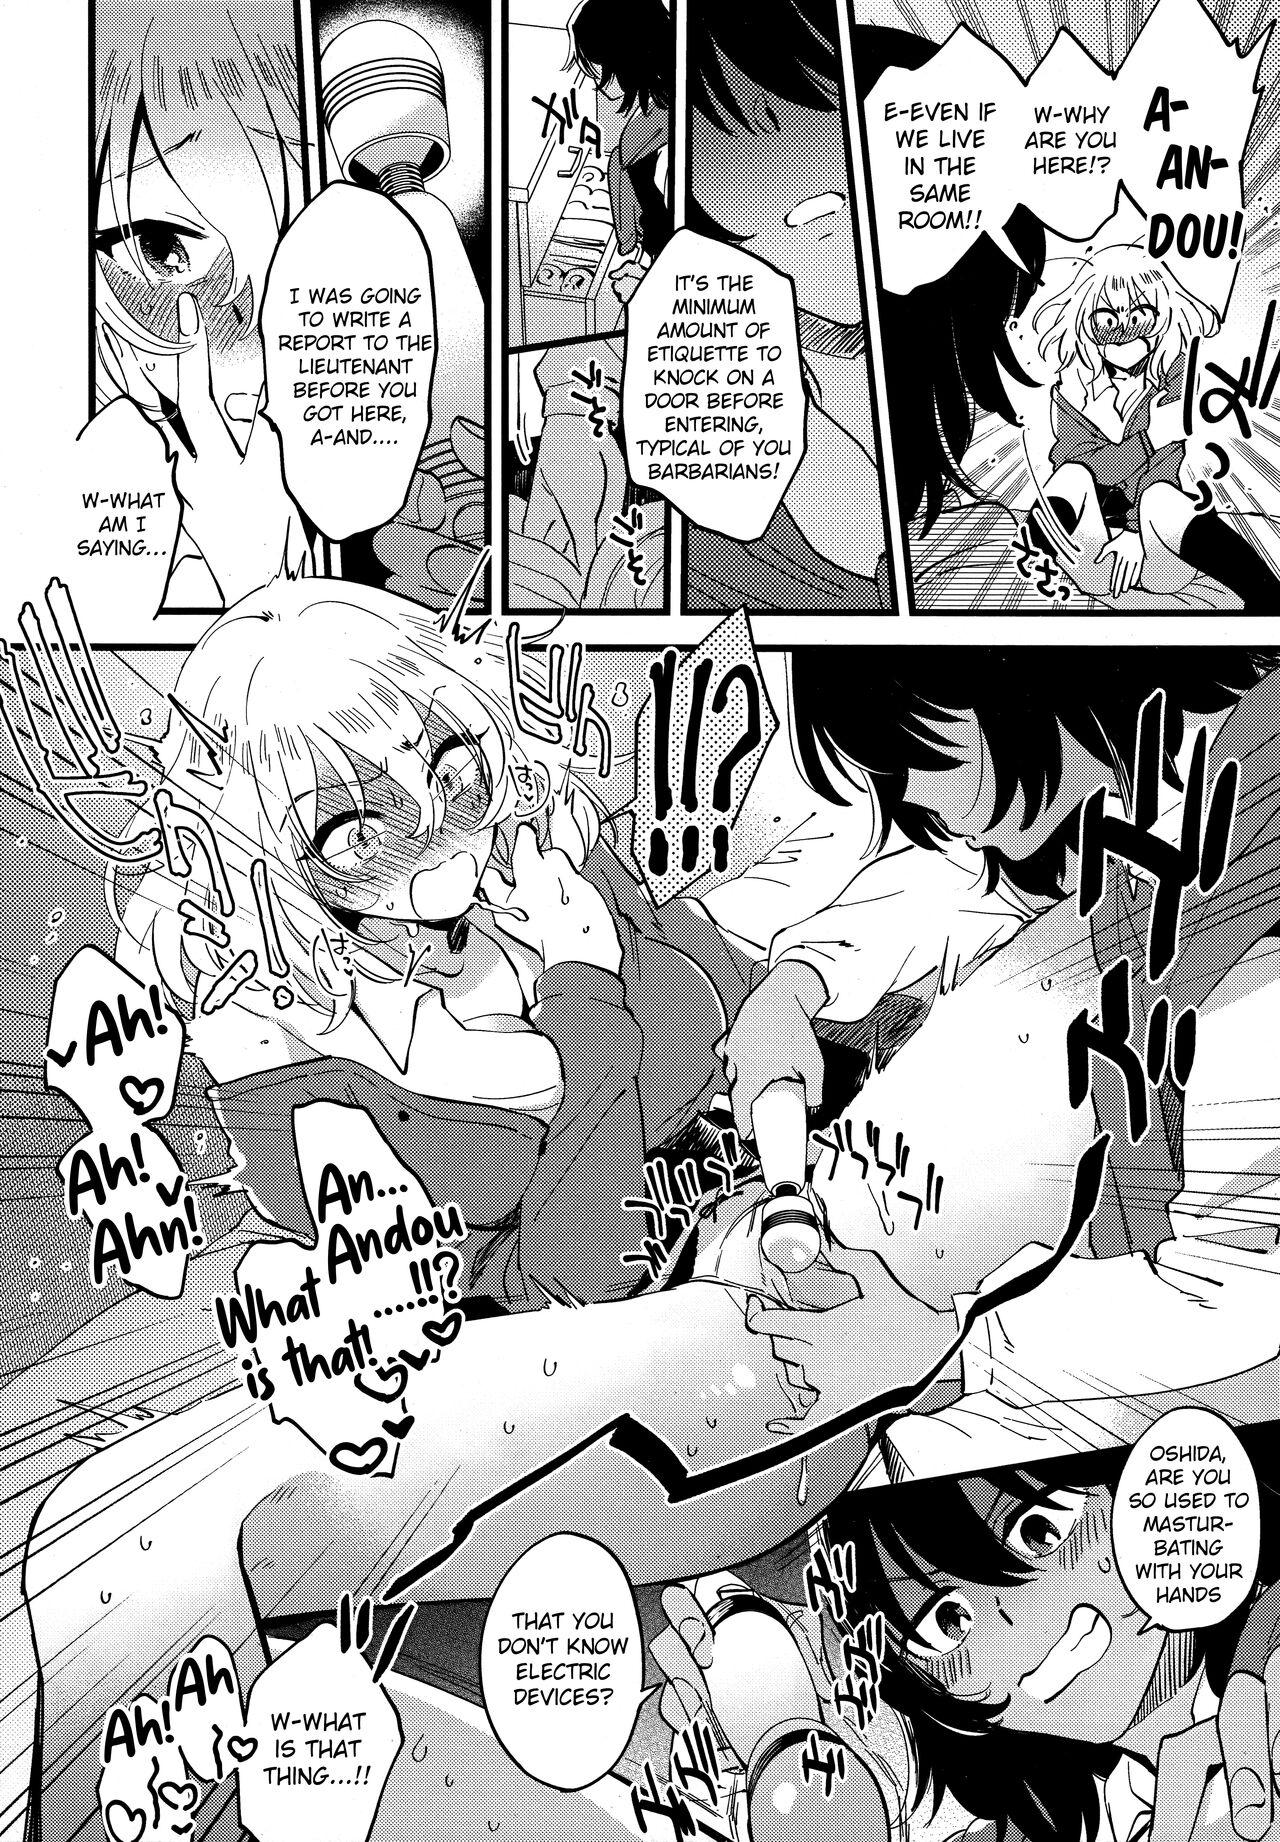 Blowjob Porn AnOshi, Nakayoku! - Girls und panzer Blows - Page 9